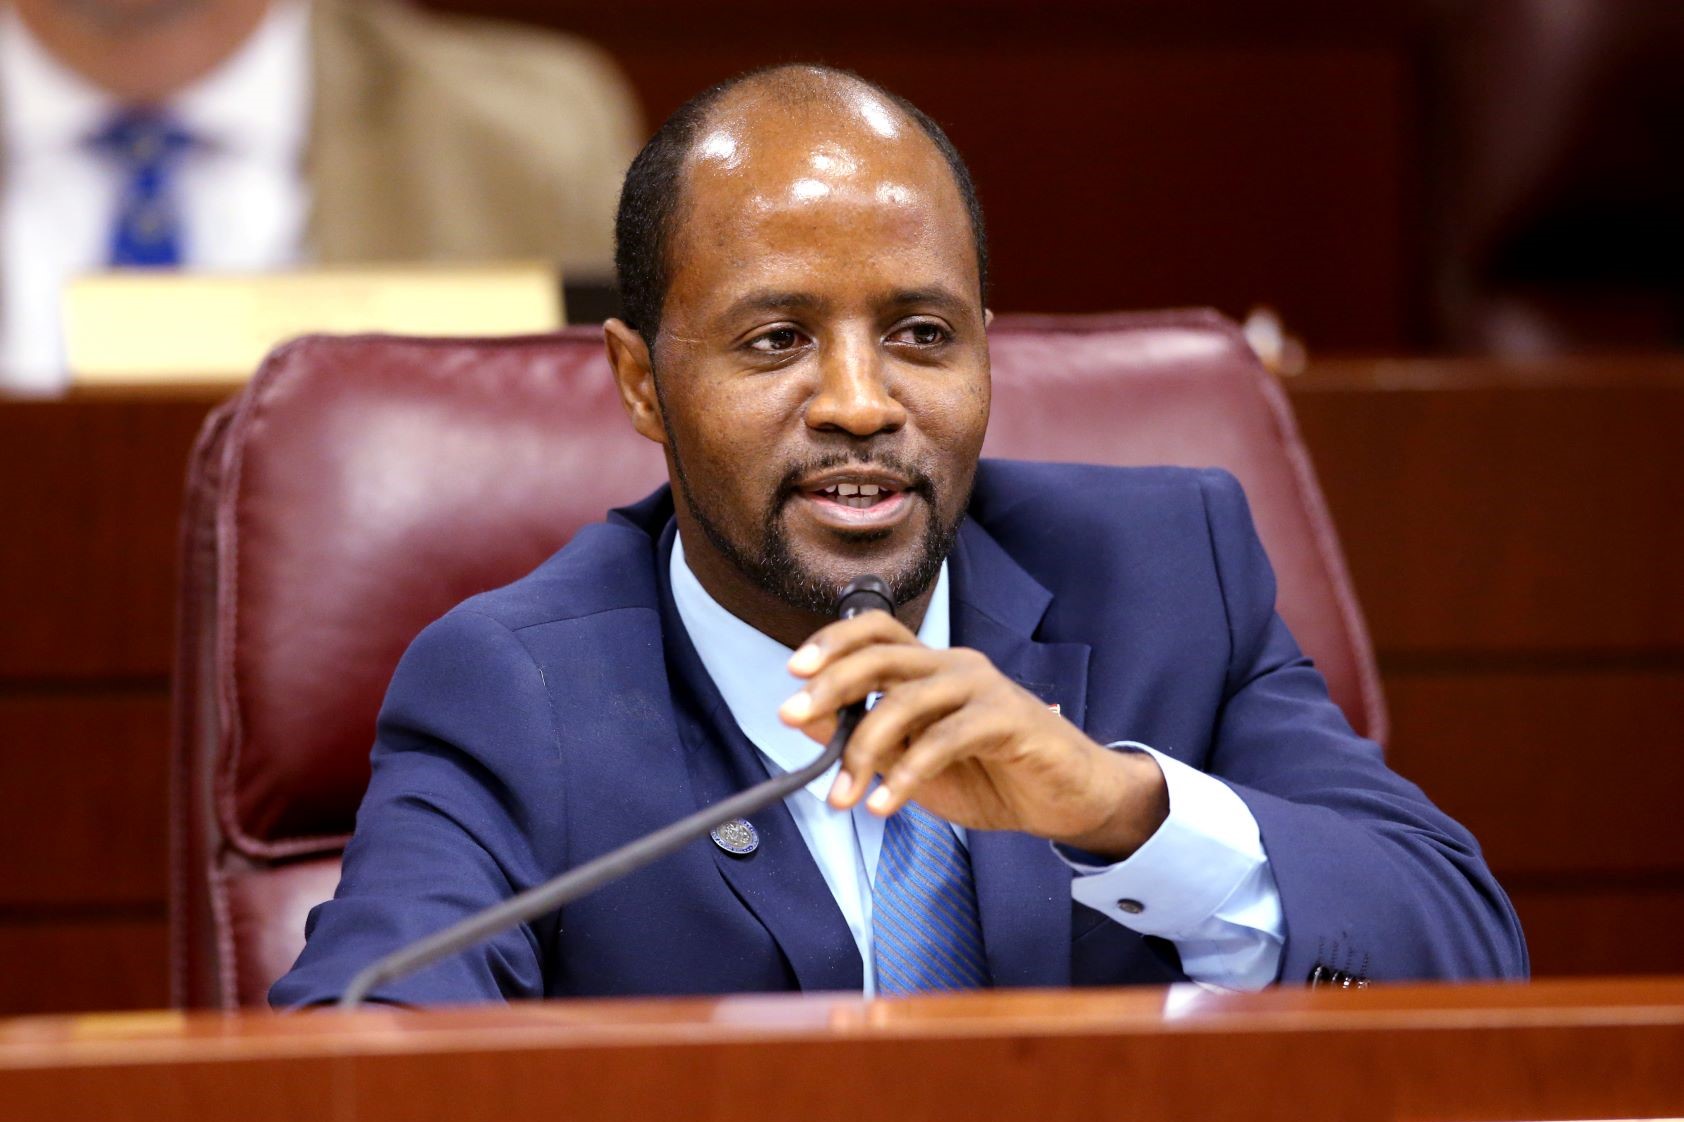 Mantan Anggota Parlemen Alexander Assefa dijatuhi hukuman percobaan atas pencurian, dengan tuduhan berbohong